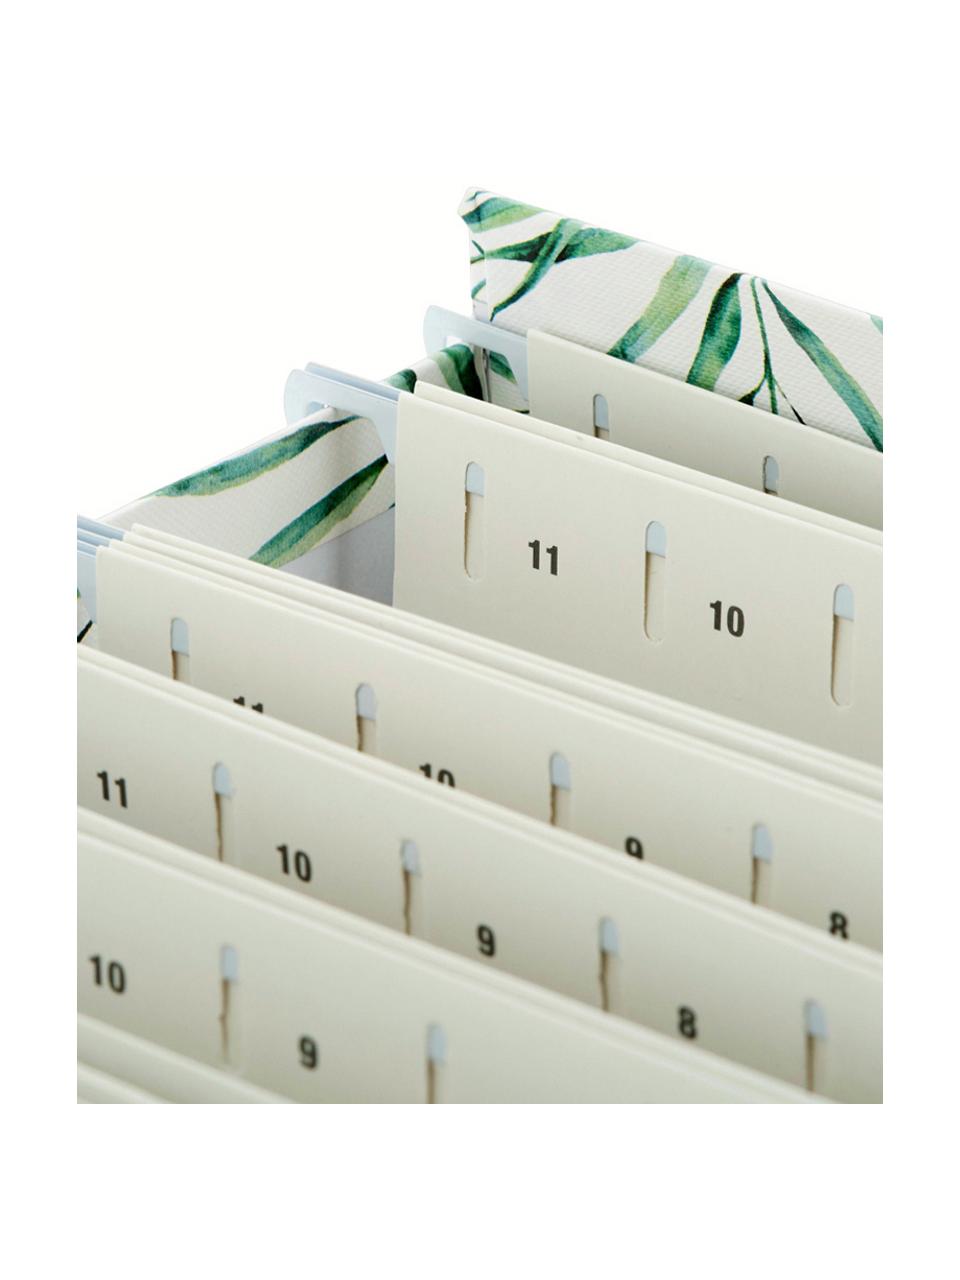 Archivačný box Johan, 9 dielov, Biela, zelená, Š 19 x V 27 cm